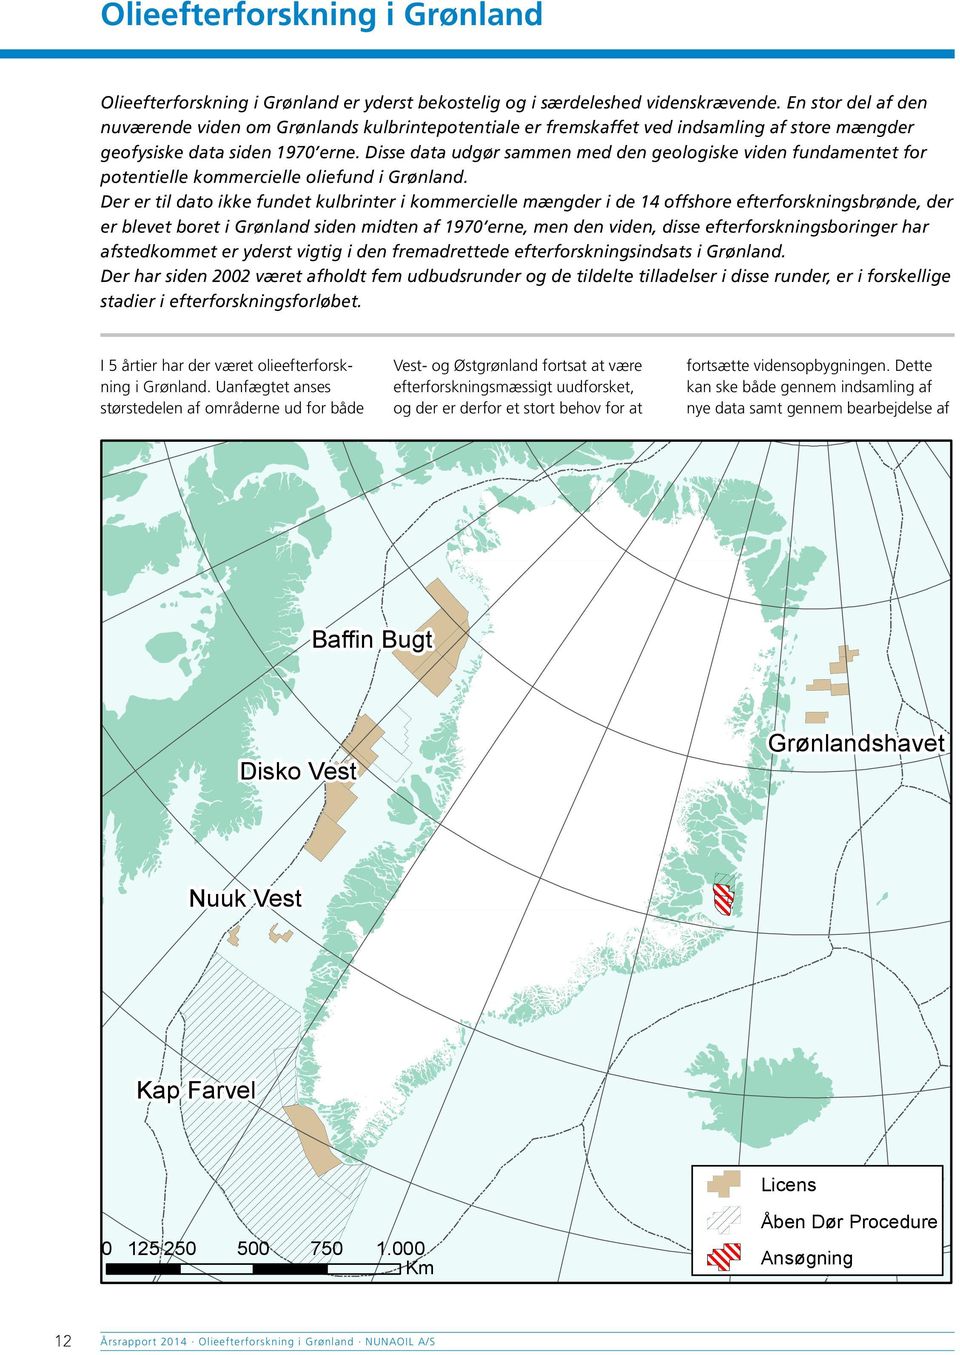 Disse data udgør sammen med den geologiske viden fundamentet for potentielle kommercielle oliefund i Grønland.